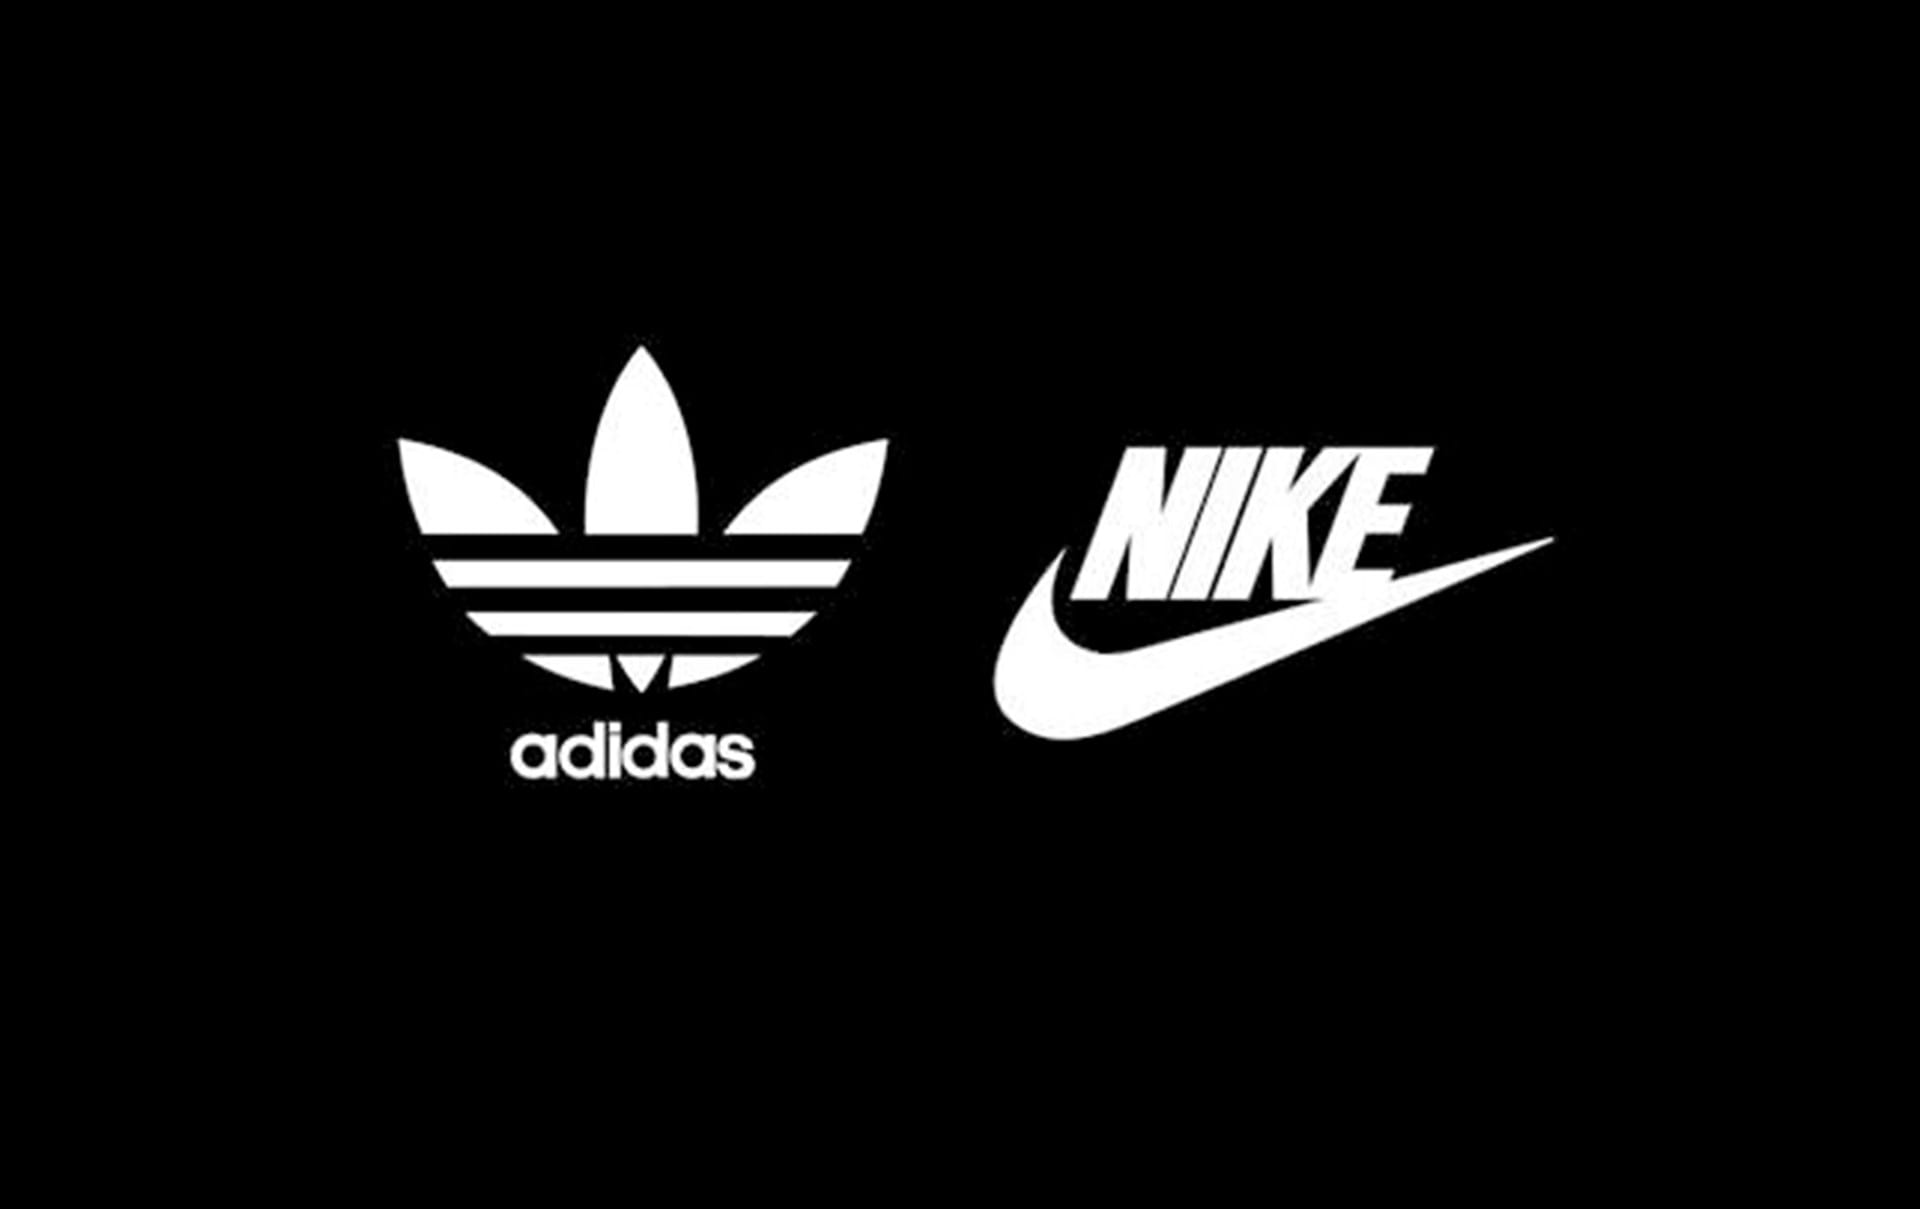 Nike vs adidas